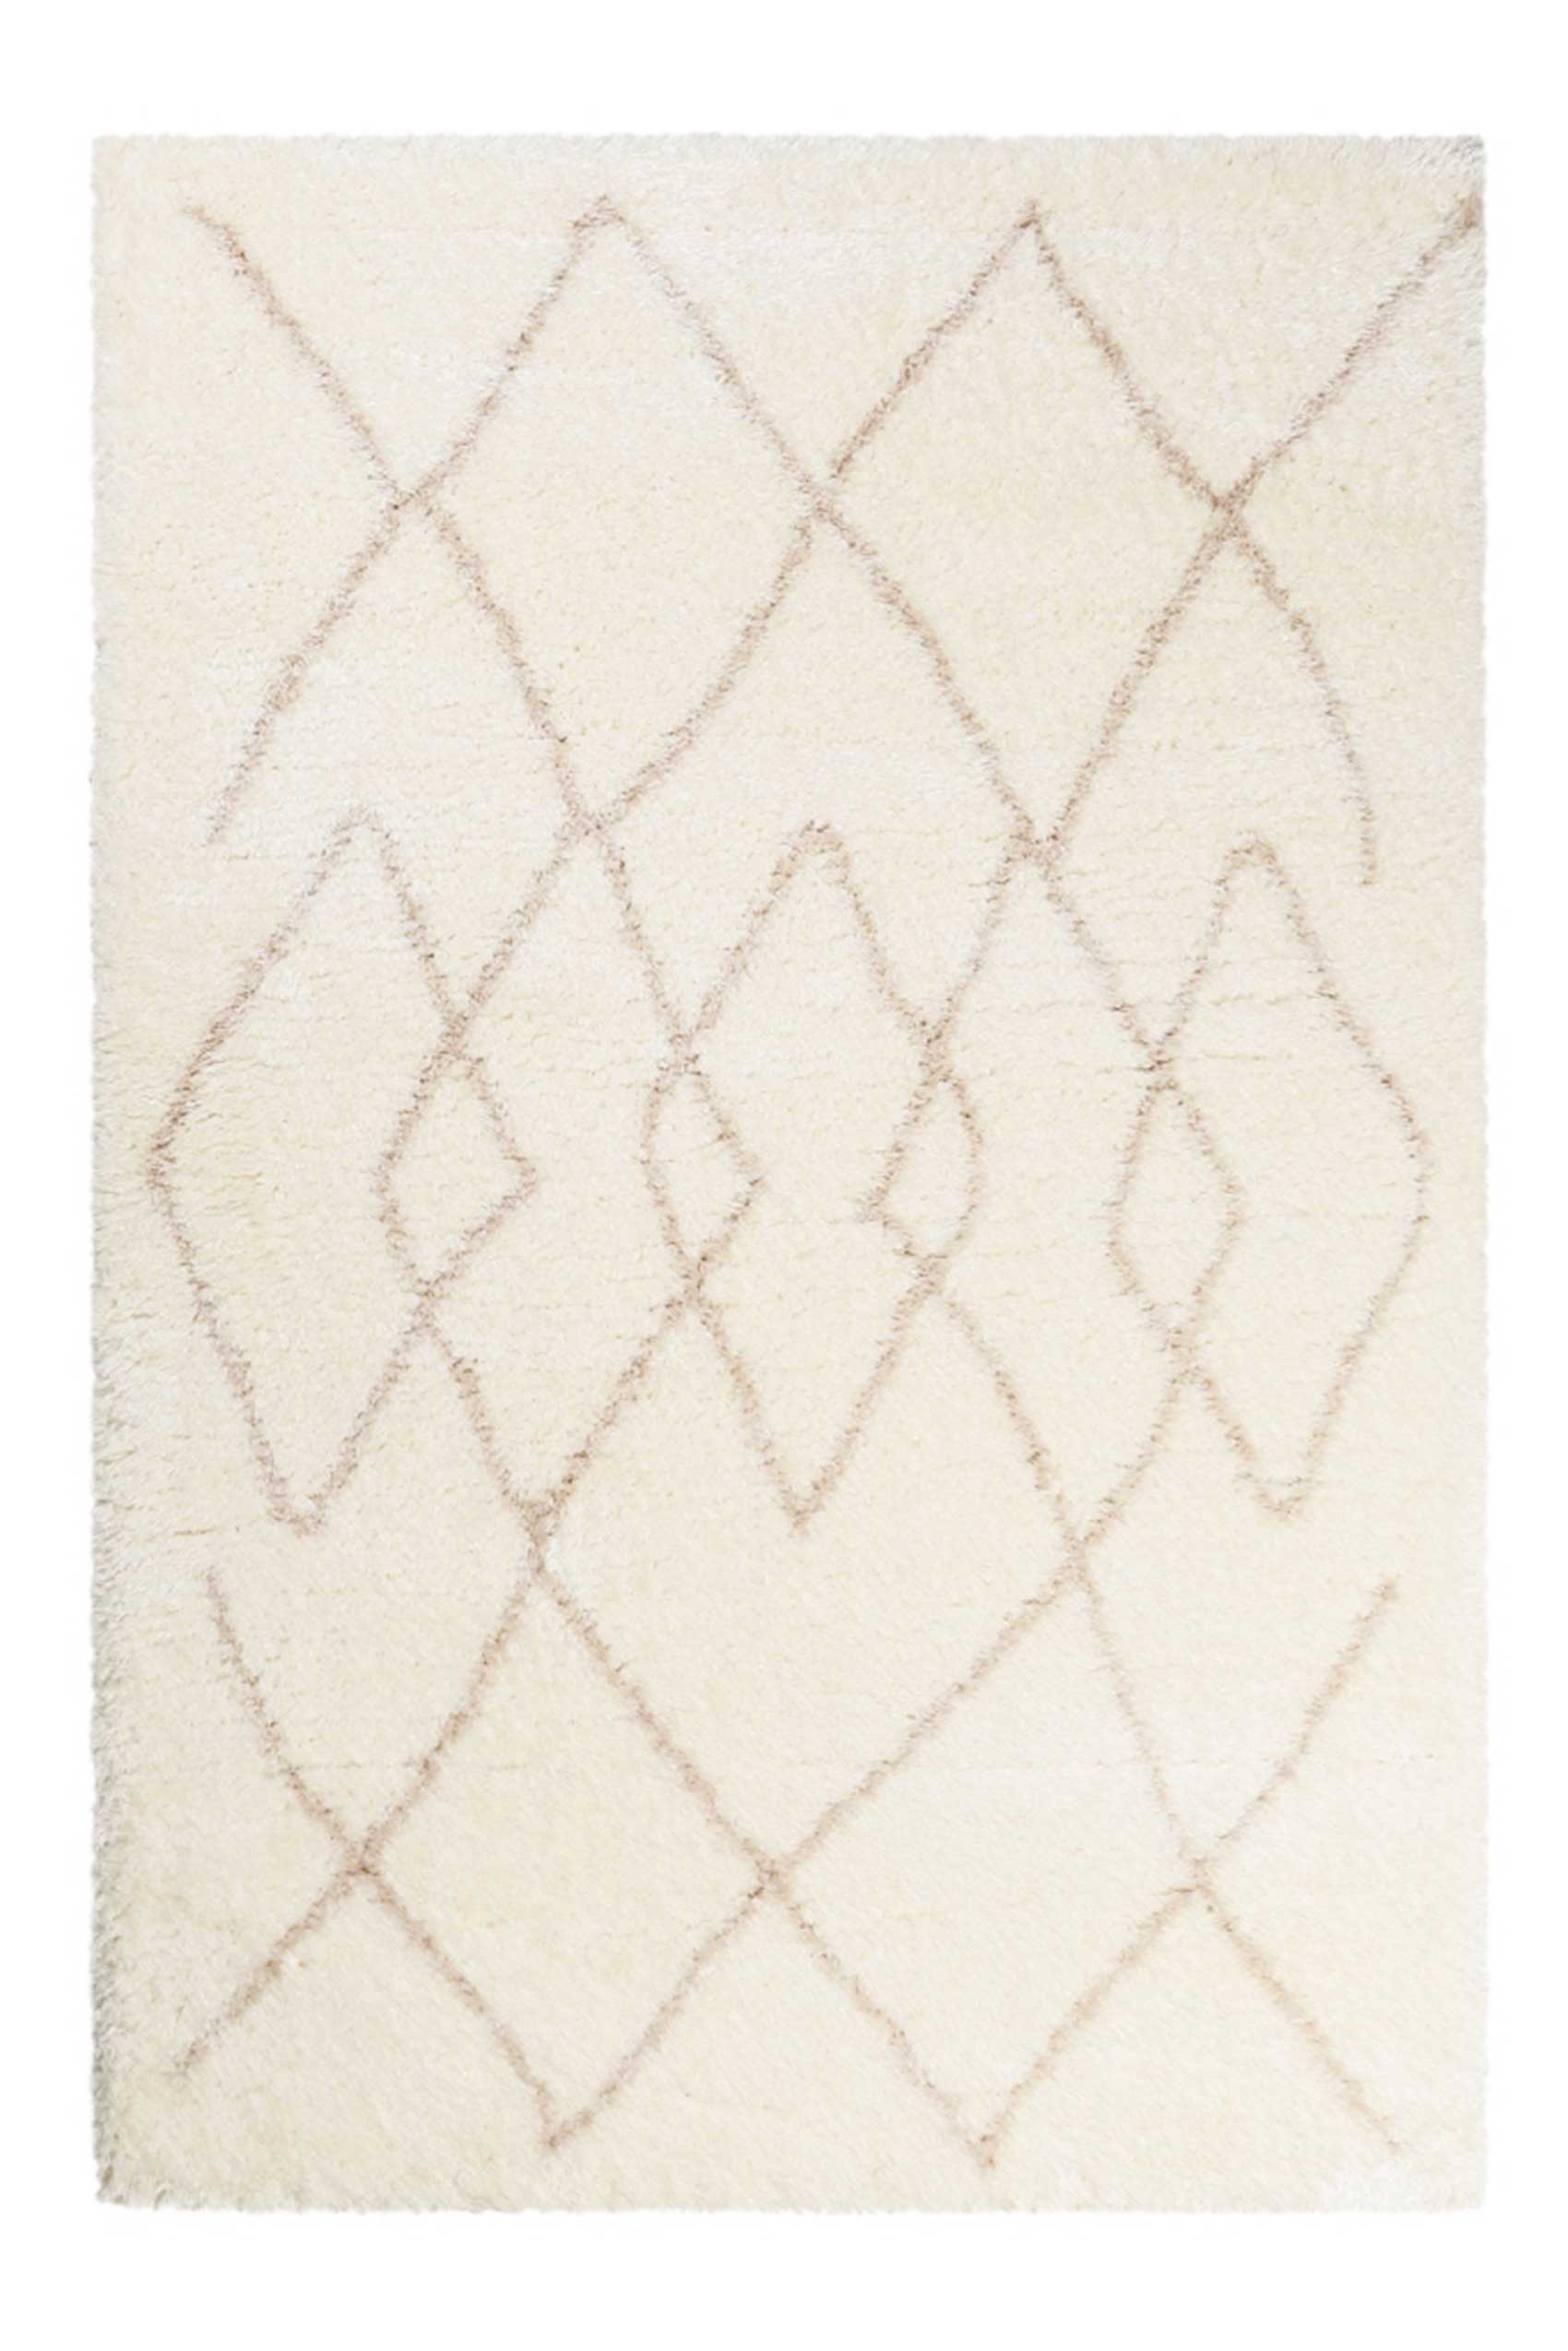 Teppich Creme Weiß Beige sehr flauschig & kuschelig » Afella « WECONhome - Ansicht 1